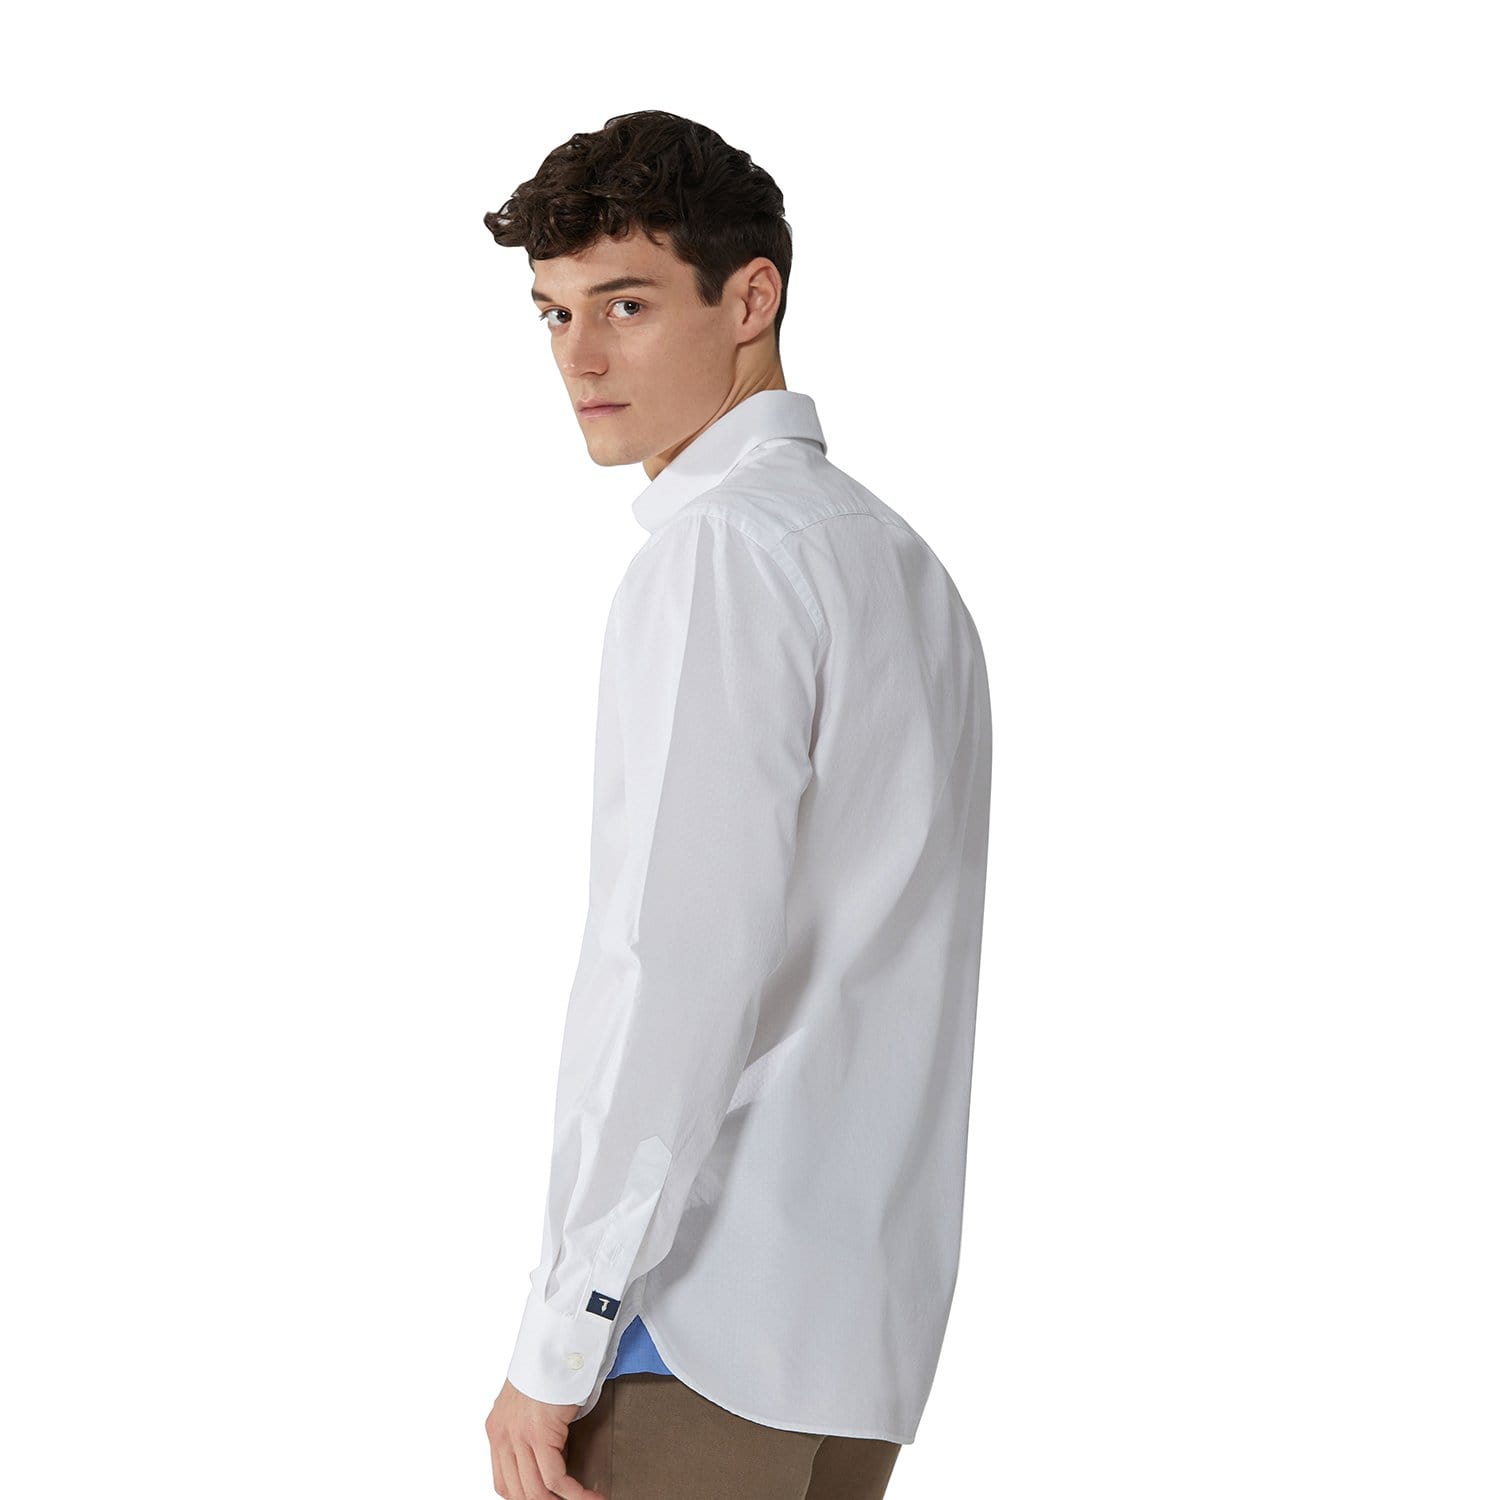 Trussardi Textured Cotton Shirt - White - 52C00138